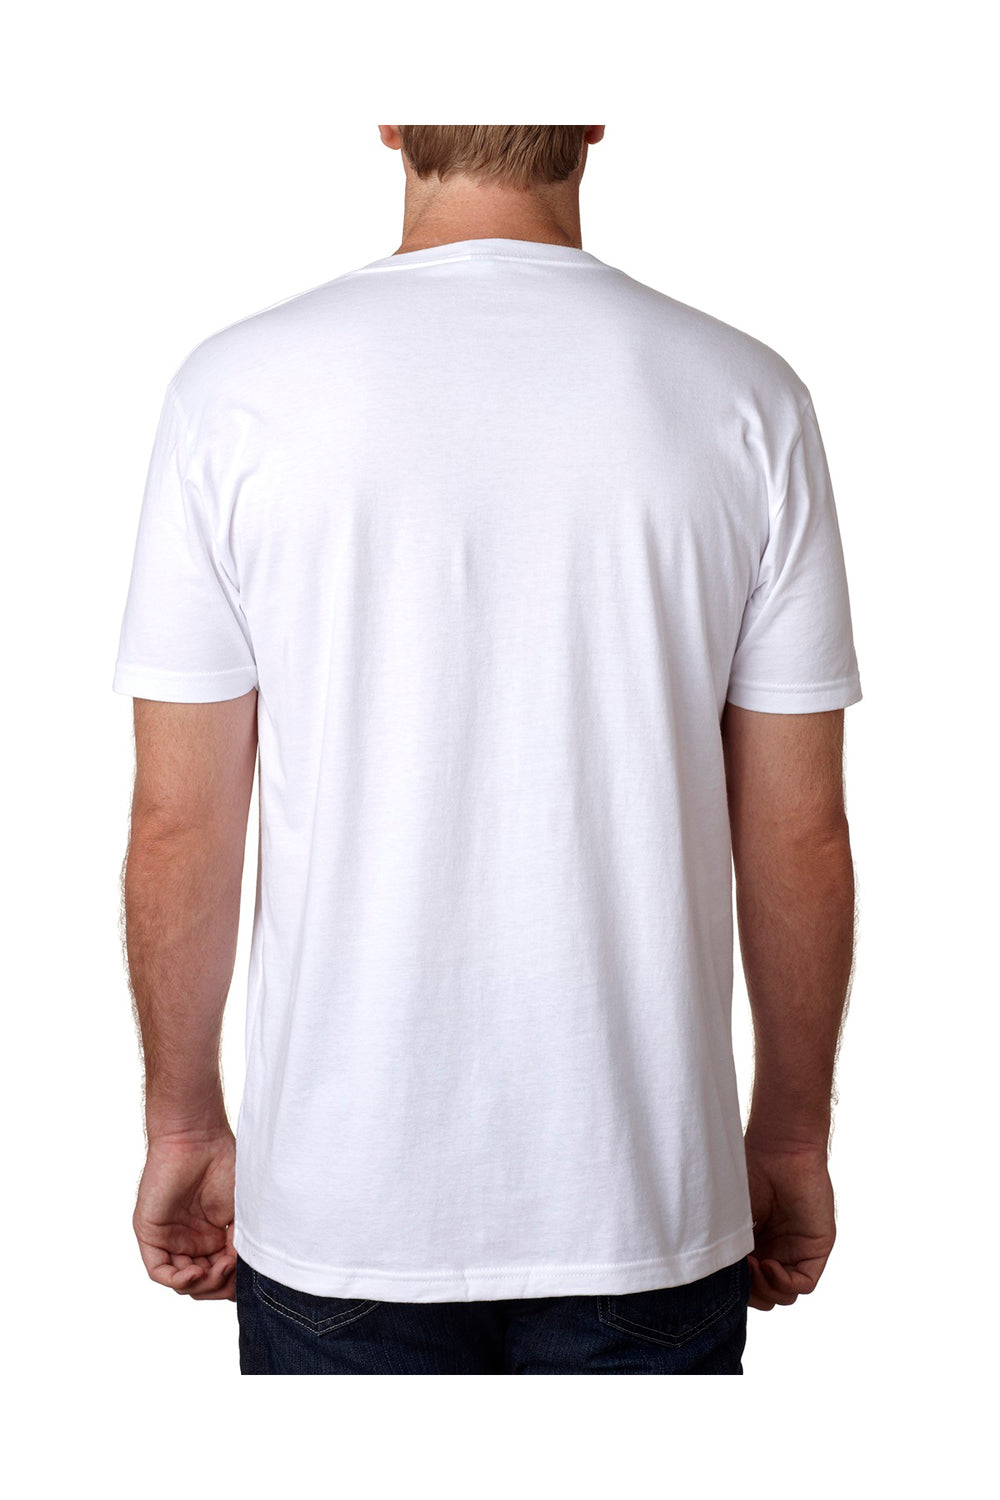 Next Level N3200 Mens Fine Jersey Short Sleeve V-Neck T-Shirt White Back